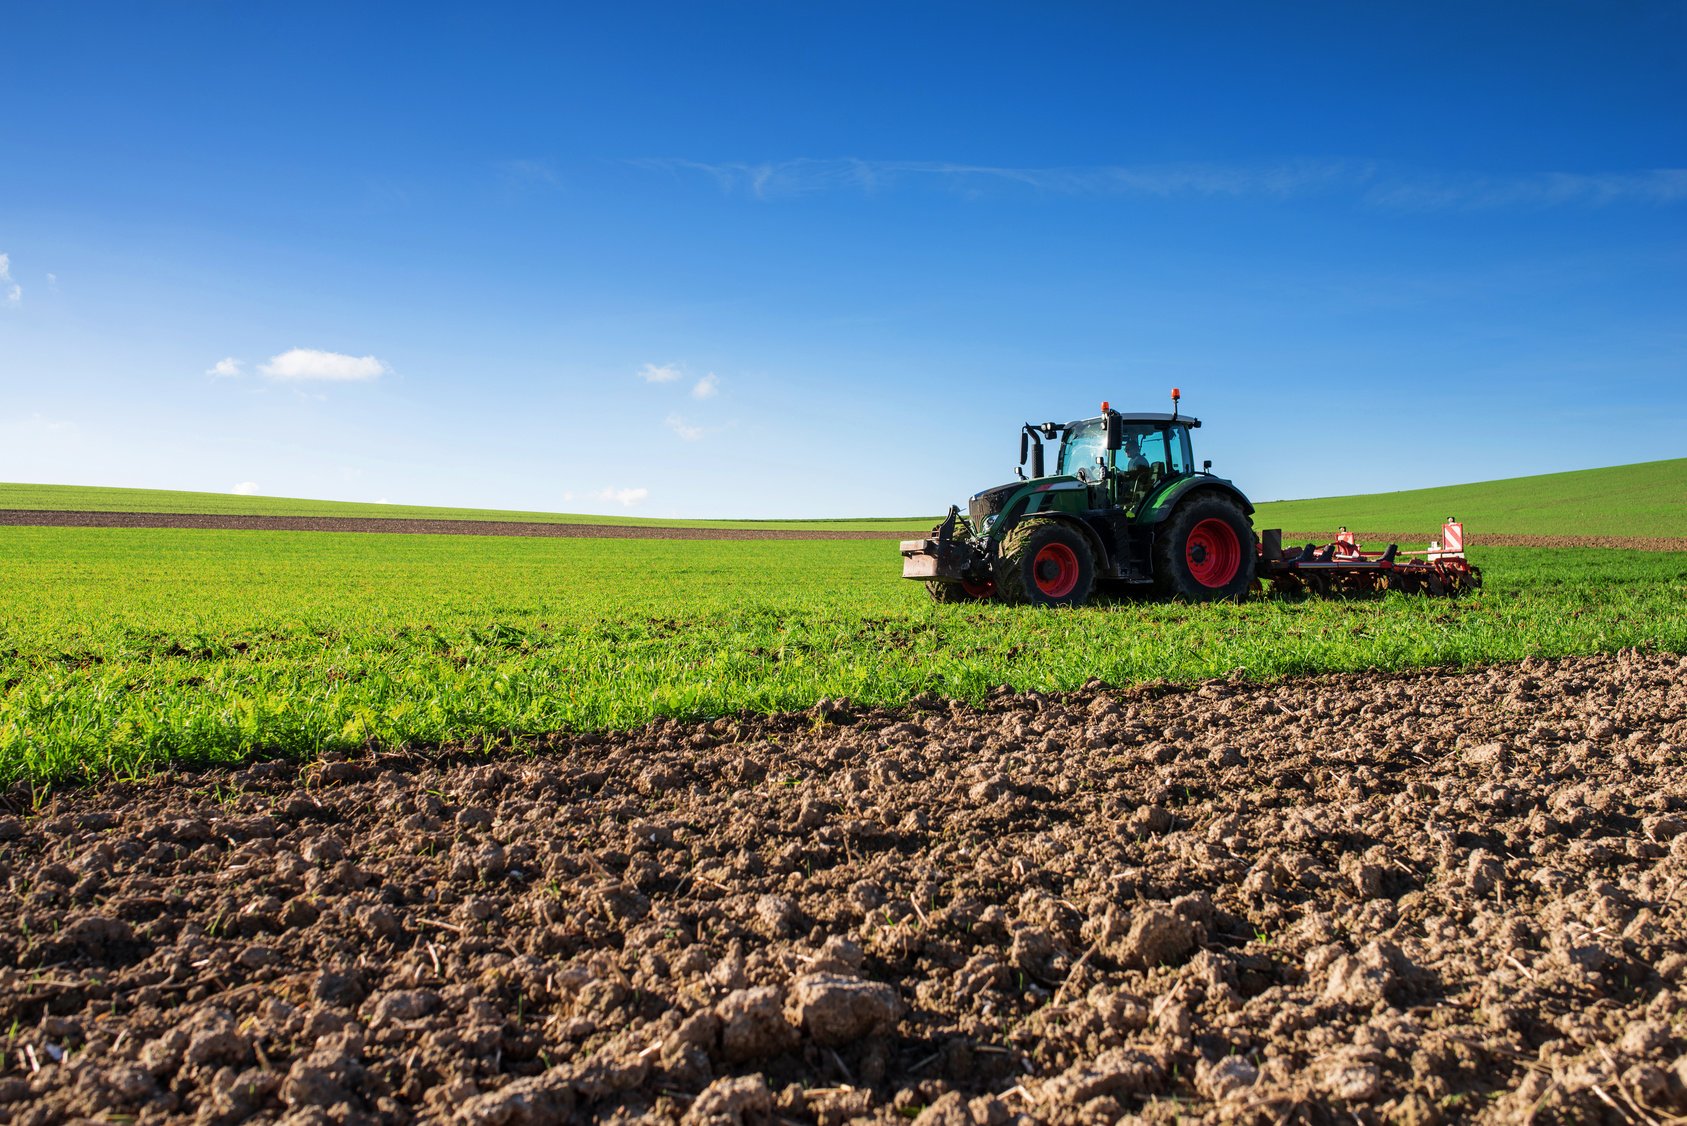 Υπουργείο Αγροτικής Ανάπτυξης και Τροφίμων: Ενεργοποιήθηκε η ηλεκτρονική υπηρεσία έκδοσης βεβαίωσης επαγγελματία αγρότη για το φορολογικό έτος 2020